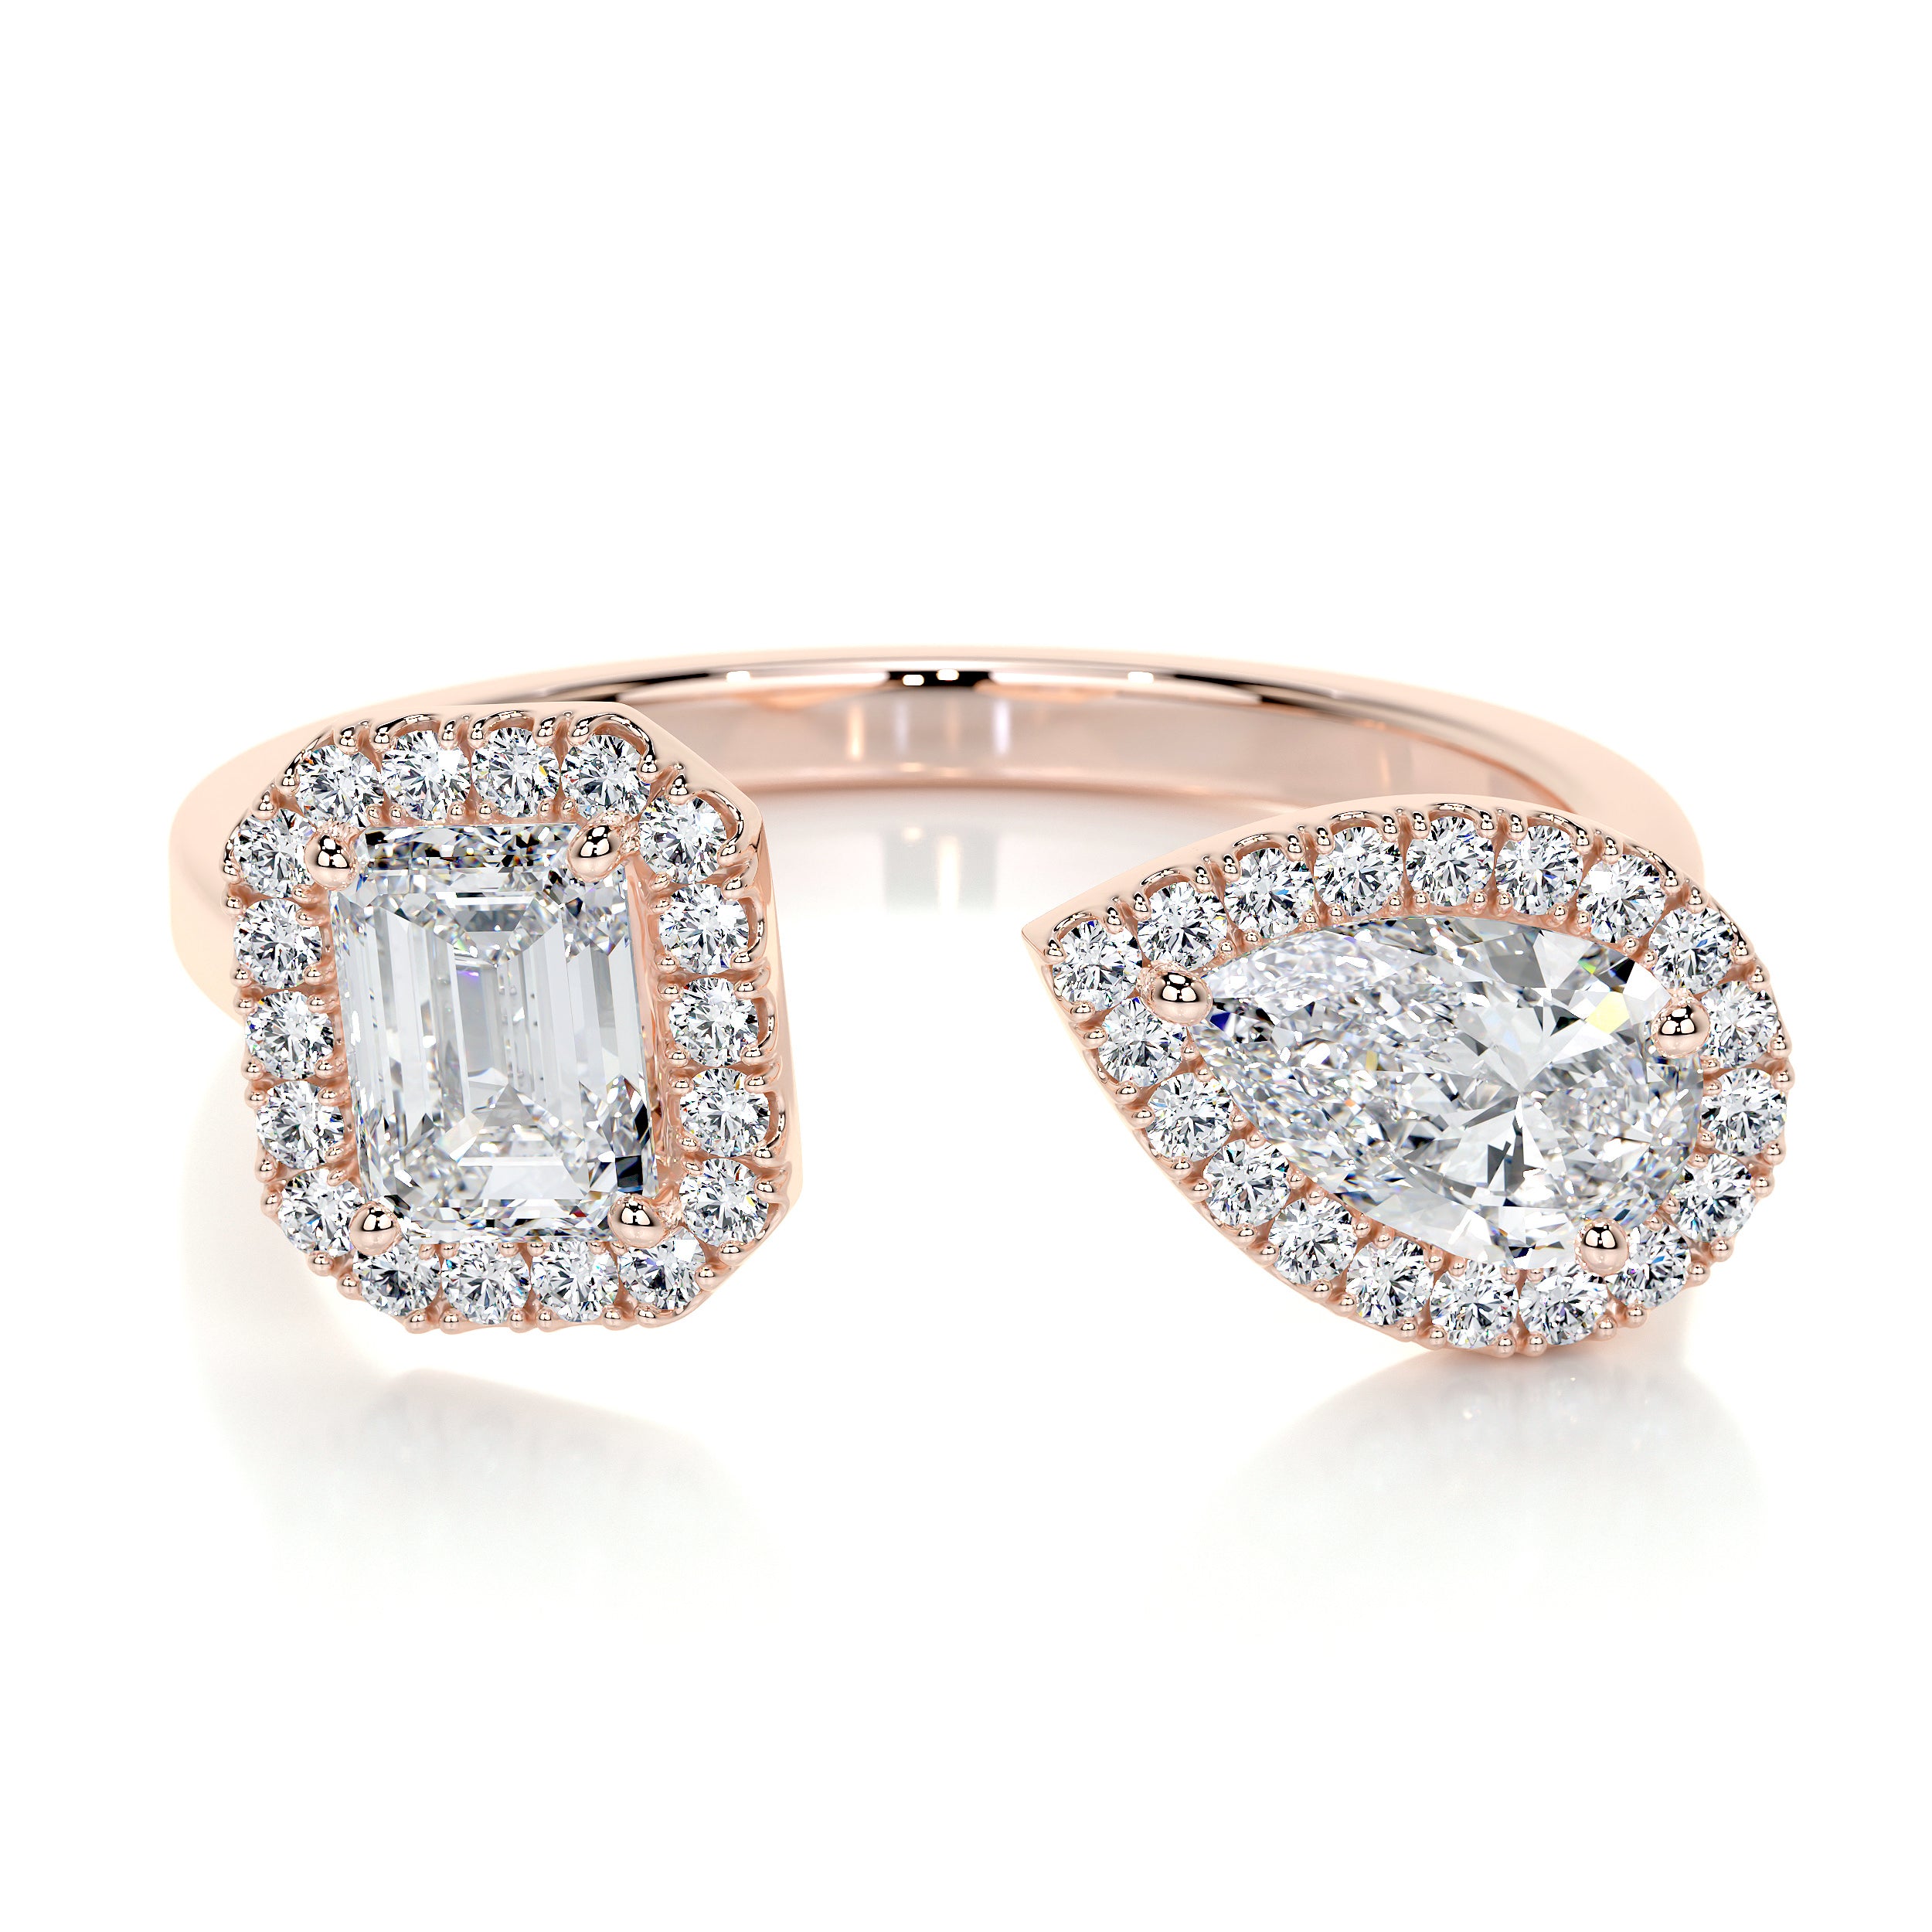 Edith Lab Grown Diamond Wedding Ring   (1.2 Carat) -14K Rose Gold